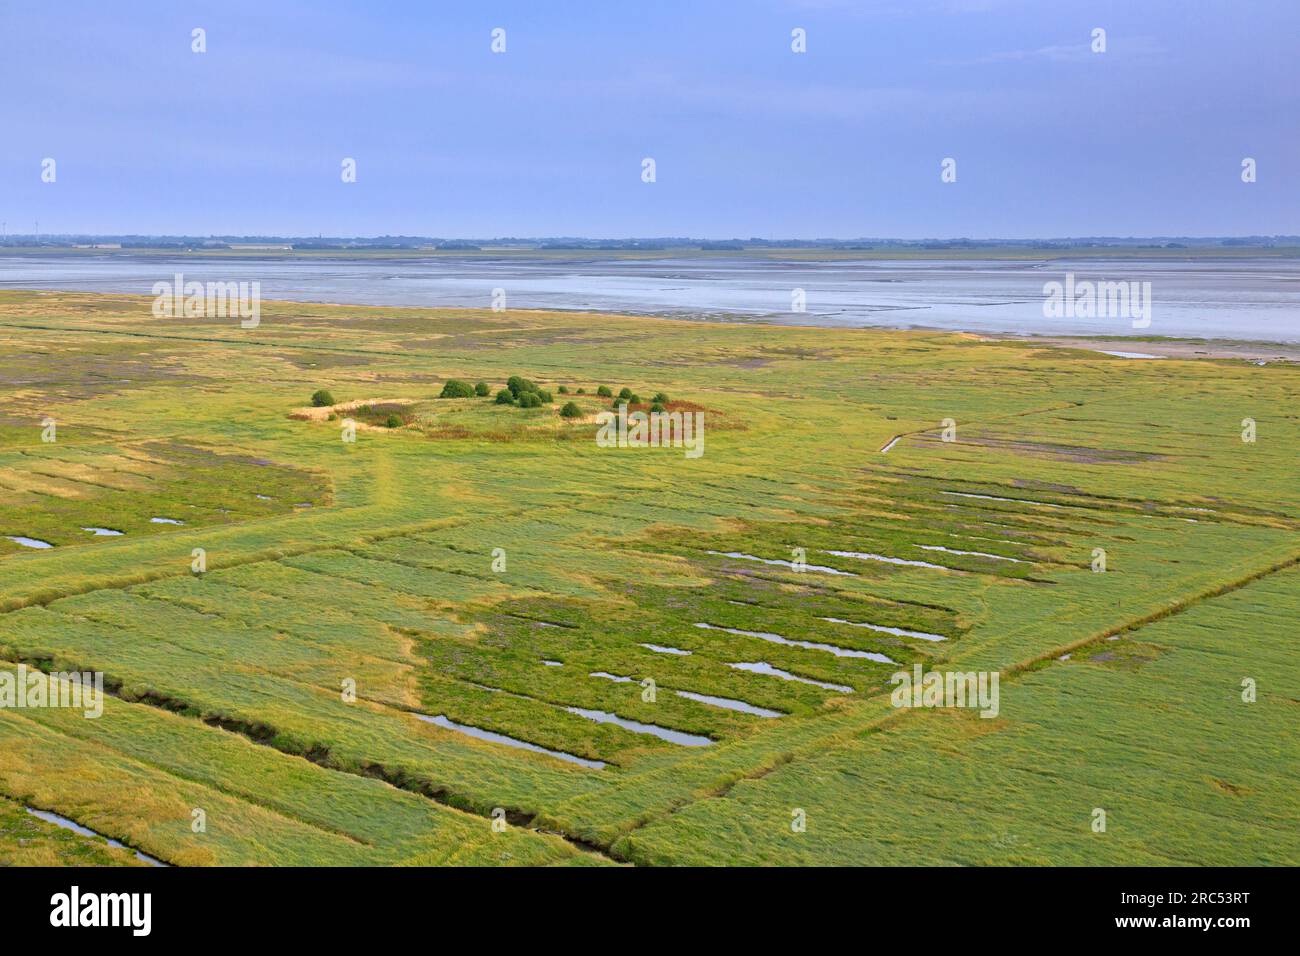 Vista aerea sulla palude salata/palude salmastre e la pianura fangosa in estate, il parco nazionale del Mare di Wadden, la Frisia settentrionale/Nordfriesland, lo Schleswig-Holstein, la Germania Foto Stock